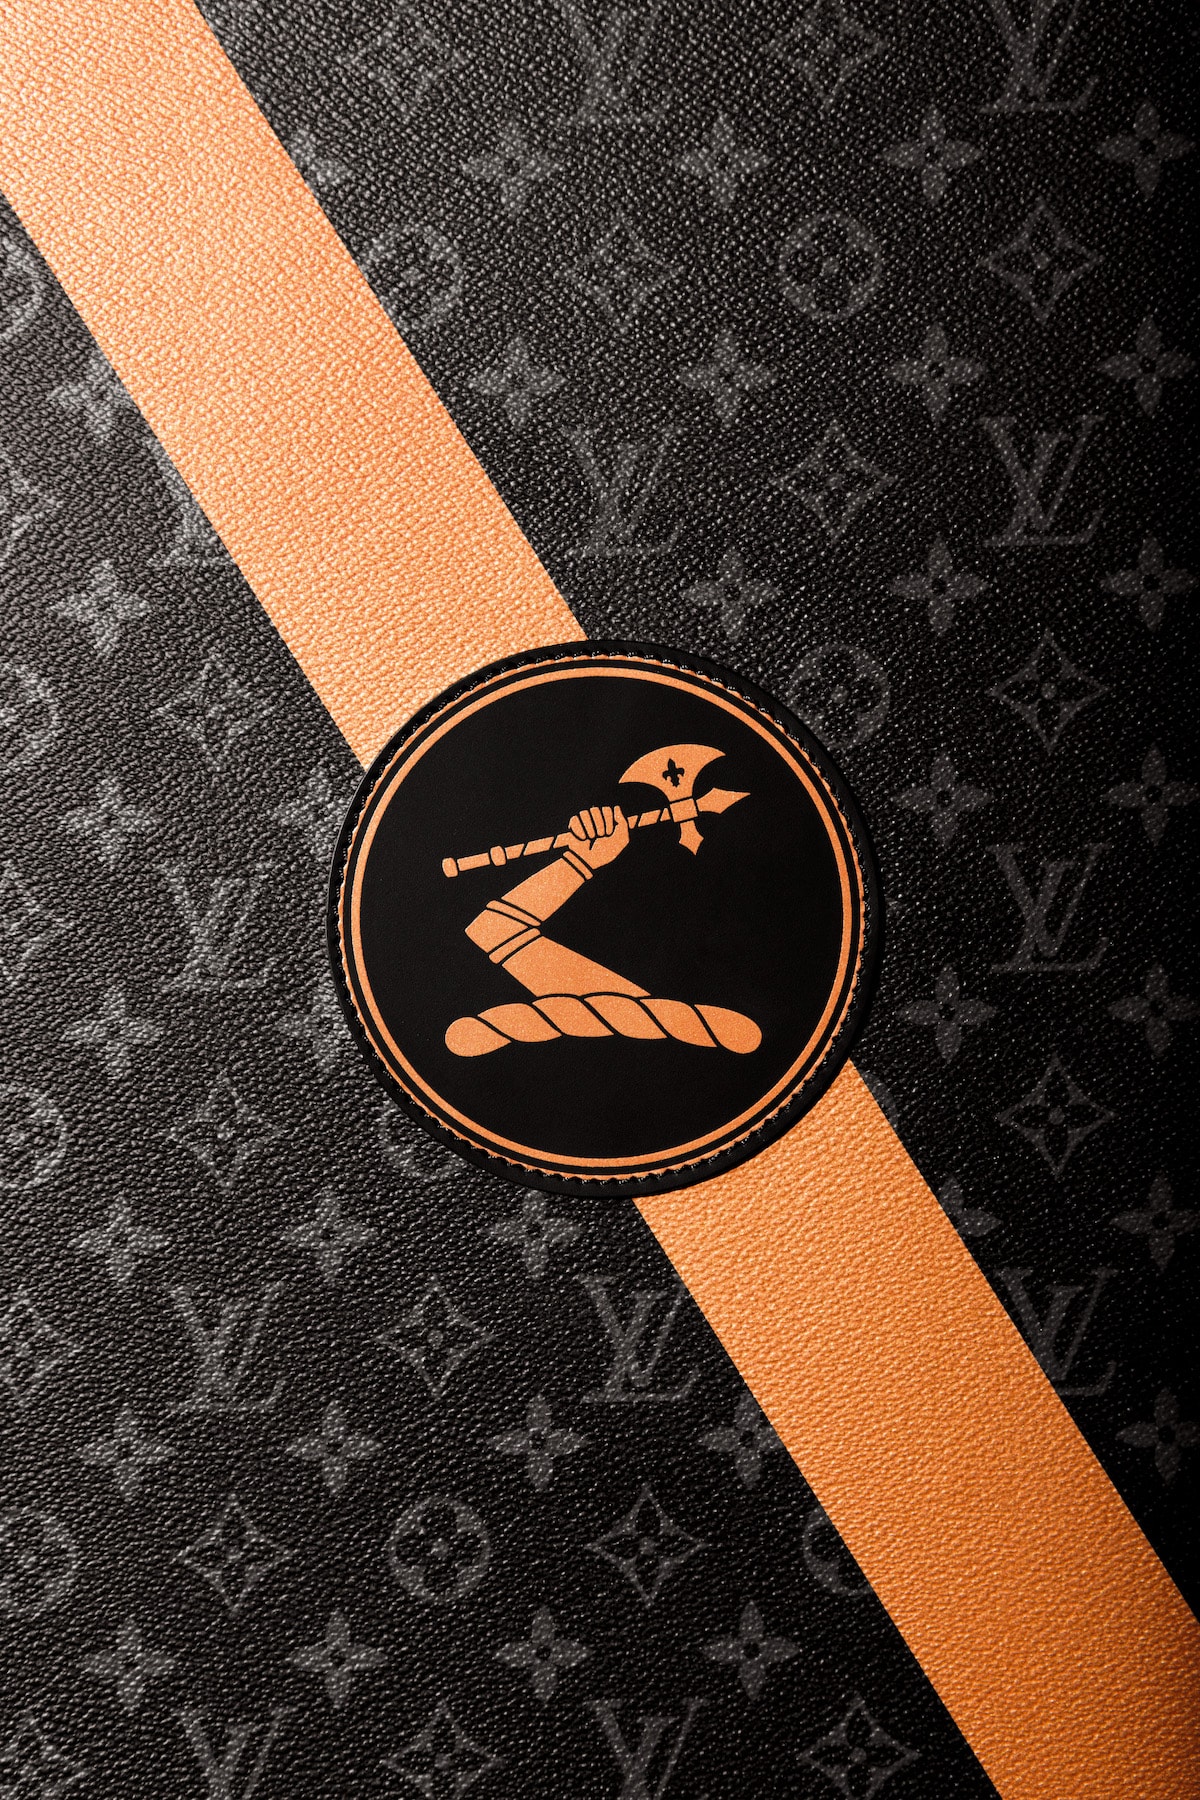 Louis Vuitton, Accessories, Louis Vuitton Monogram Iphone 6 Case 5